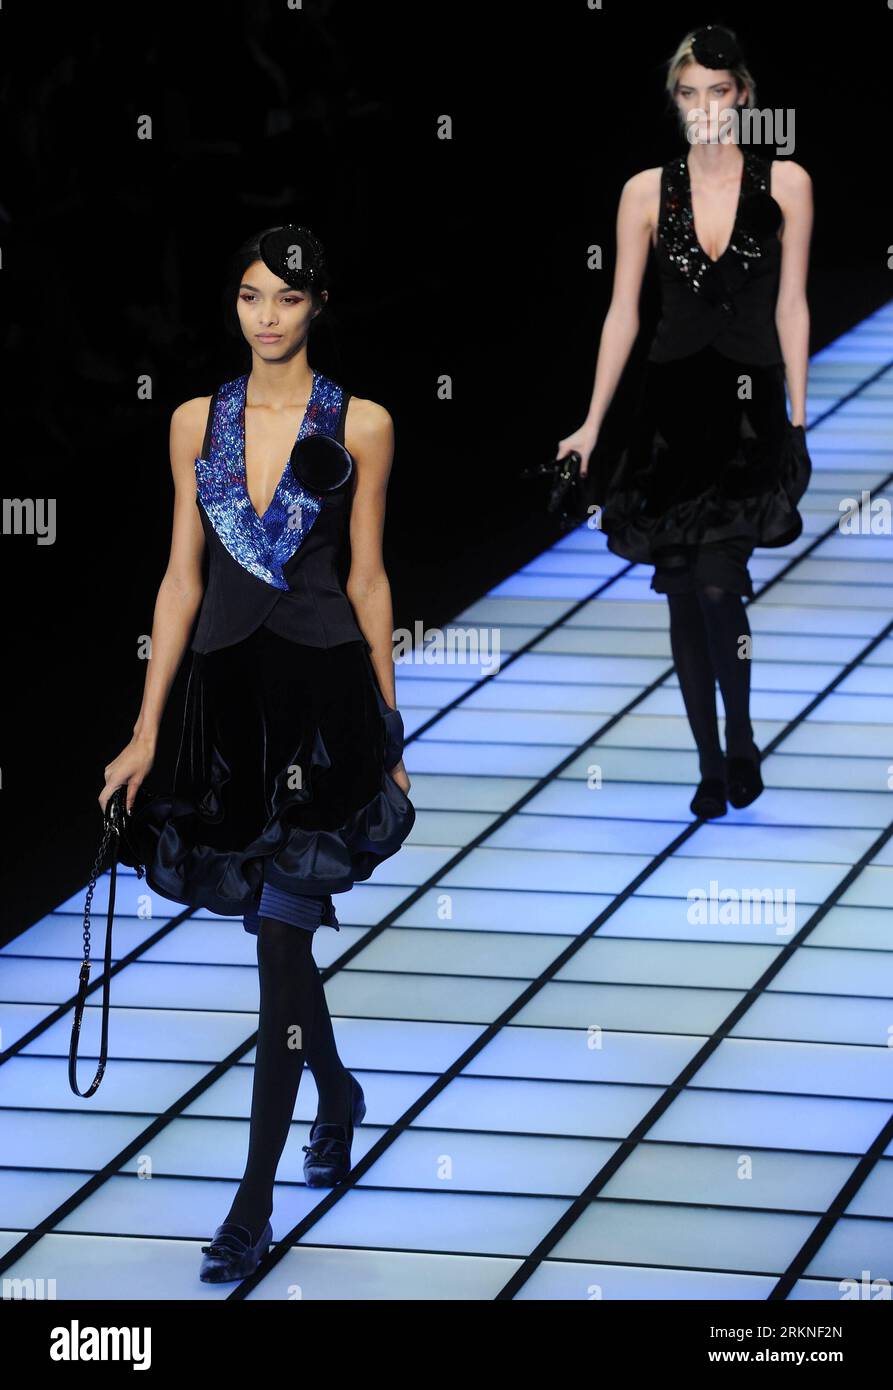 Bildnummer : 57108115 Datum : 25.02.2012 Copyright : imago/Xinhua (120226) -- MILAN, 26 février 2012 (Xinhua) -- des mannequins présentent des créations de la marque italienne Emporio Armani lors de la Fashion week de Milan vêtements pour femmes automne/hiver 2012 à Milan, Italie, 25 février 2012. (Xinhua/Wang Qingqin) (zhs) ITALY-MILAN-FASHION WEEK-EMPORIO ARMANI PUBLICATIONxNOTxINxCHN Kultur Entertainment Fashion Modenschau Modewoche Mailand Damenmode xdp x0x premiumd 2012 hoch 57108115 Date 25 02 2012 Copyright Imago XINHUA Milan Fév 26 2012 XINHUA Models présentent des créations de la marque de mode italienne Emporio AR Banque D'Images